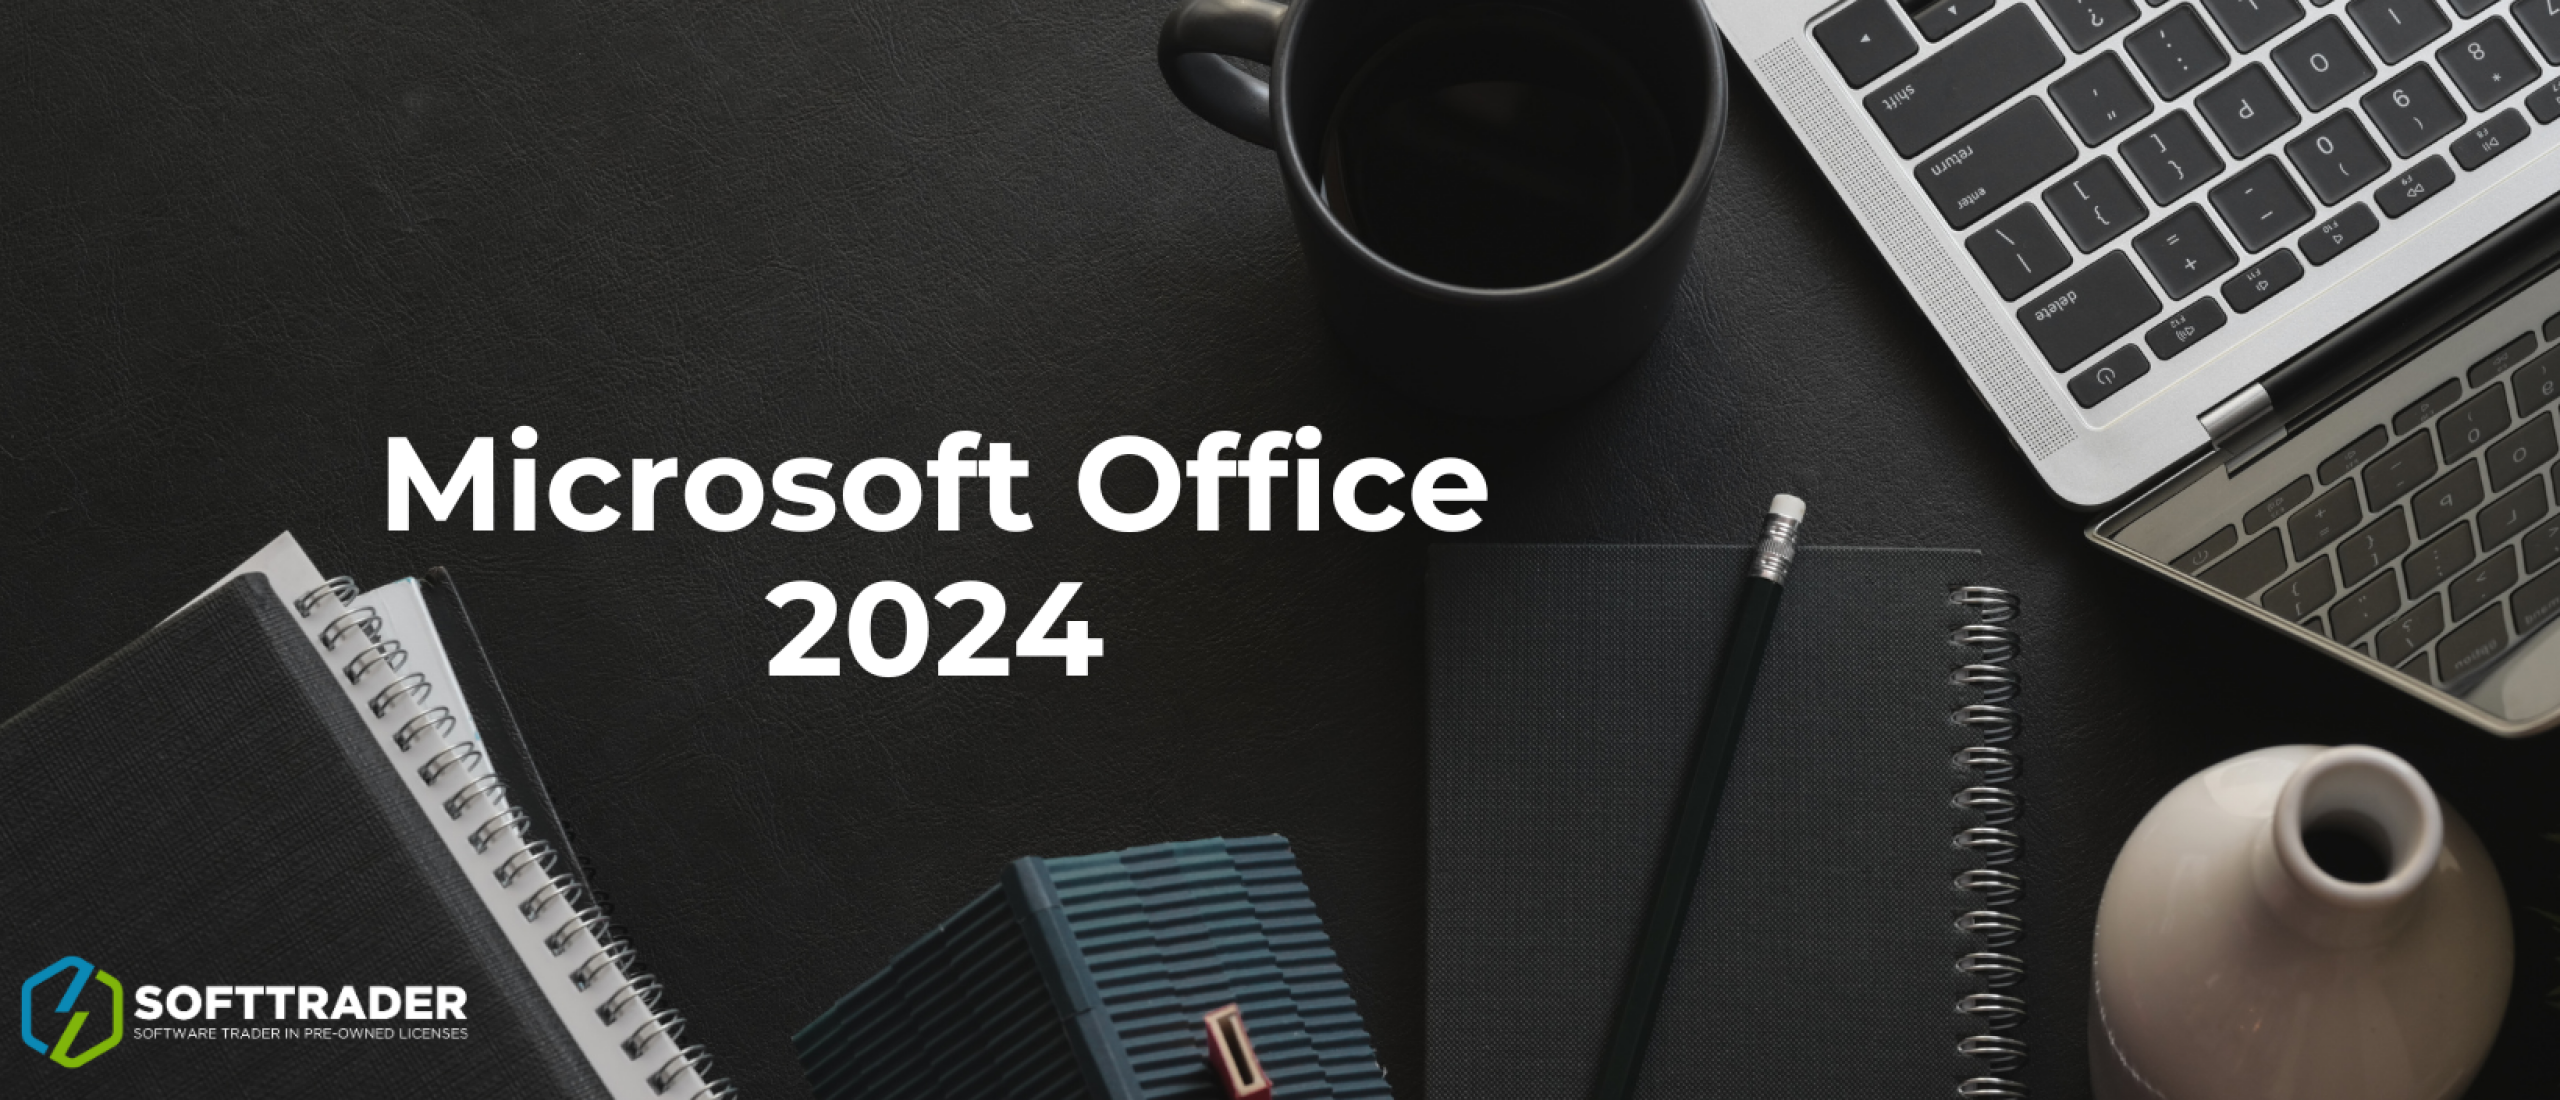 Microsoft Office 2024: Preview-build en nieuwe toevoegingen